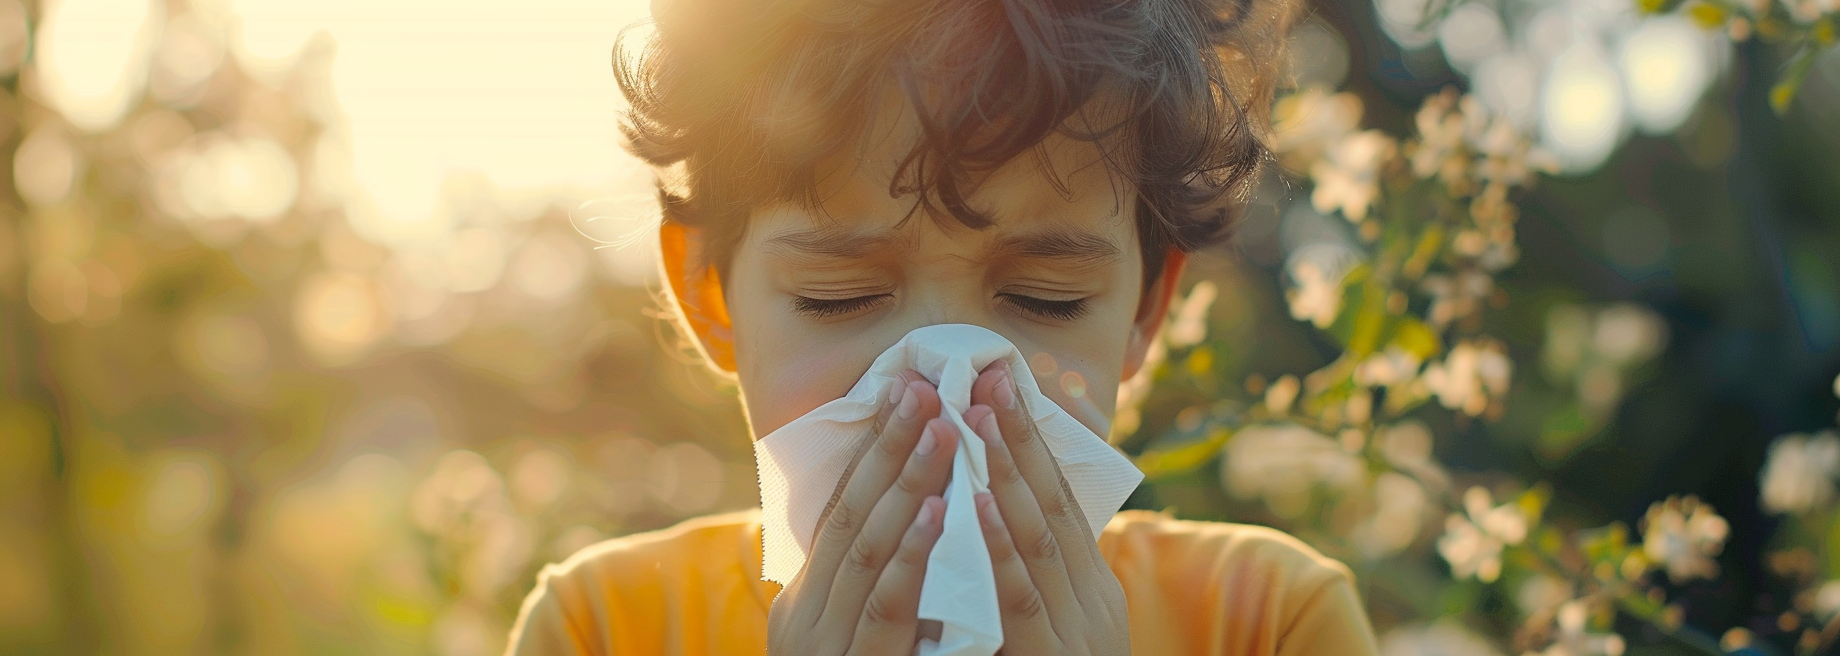 Katar alergiczny – objawy, rozpoznanie, leczenie 